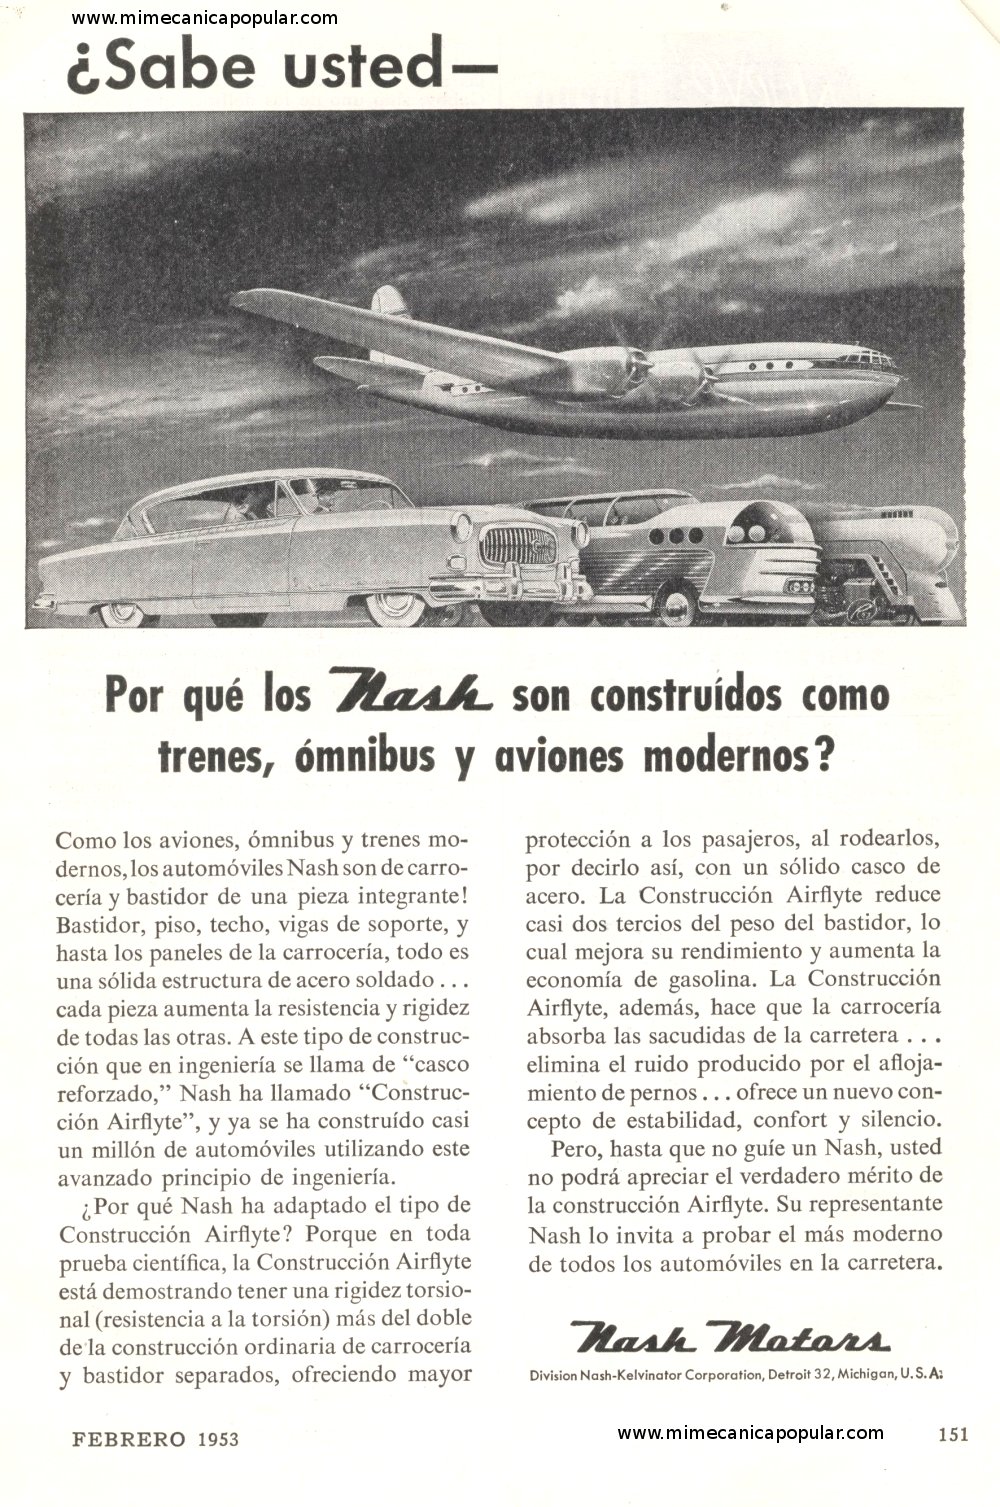 Publicidad - Nash Motors - Febrero 1953